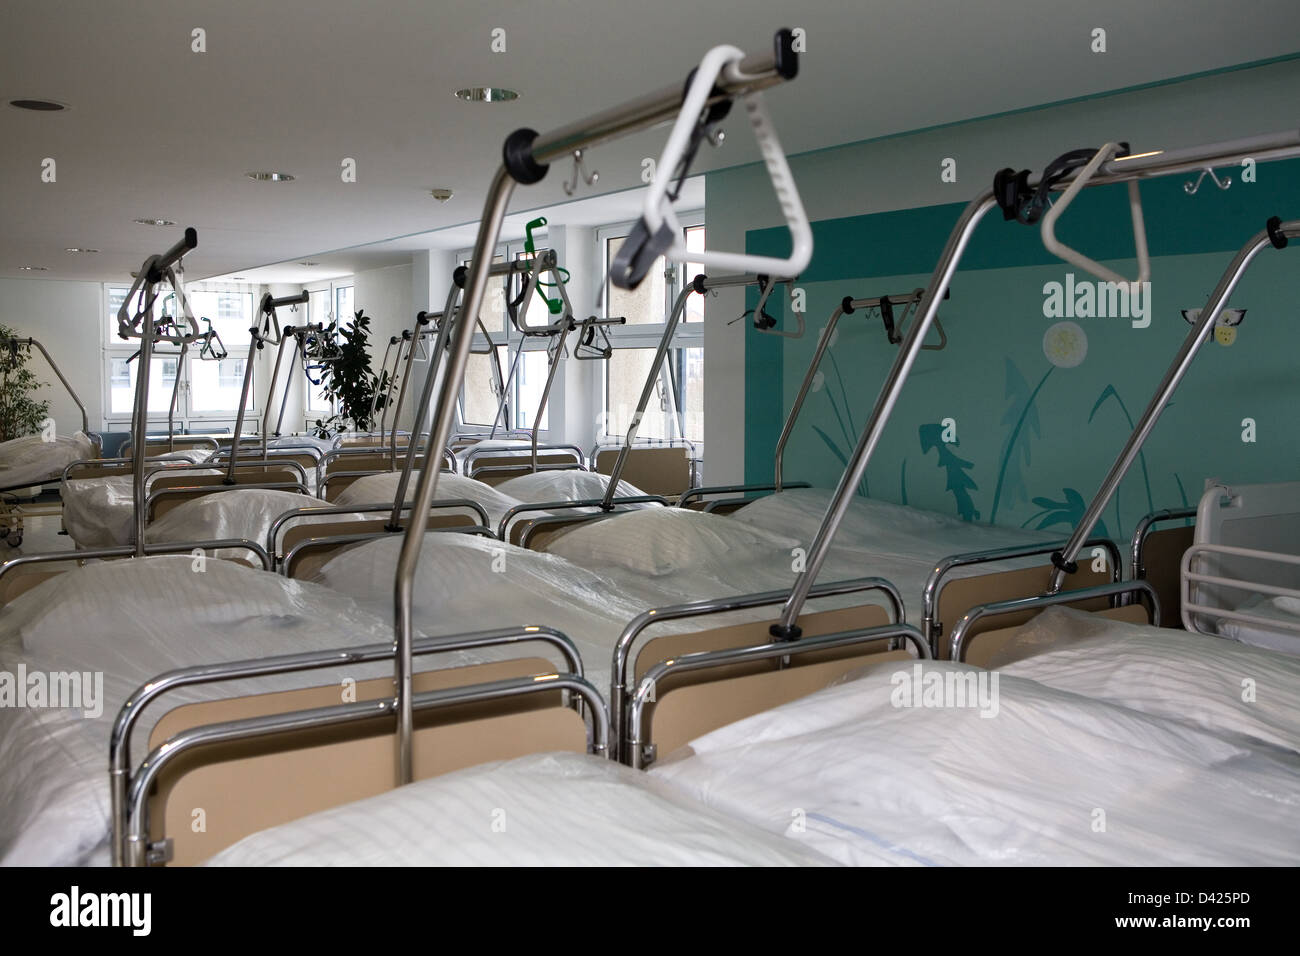 Letti d'ospedale immagini e fotografie stock ad alta risoluzione - Alamy